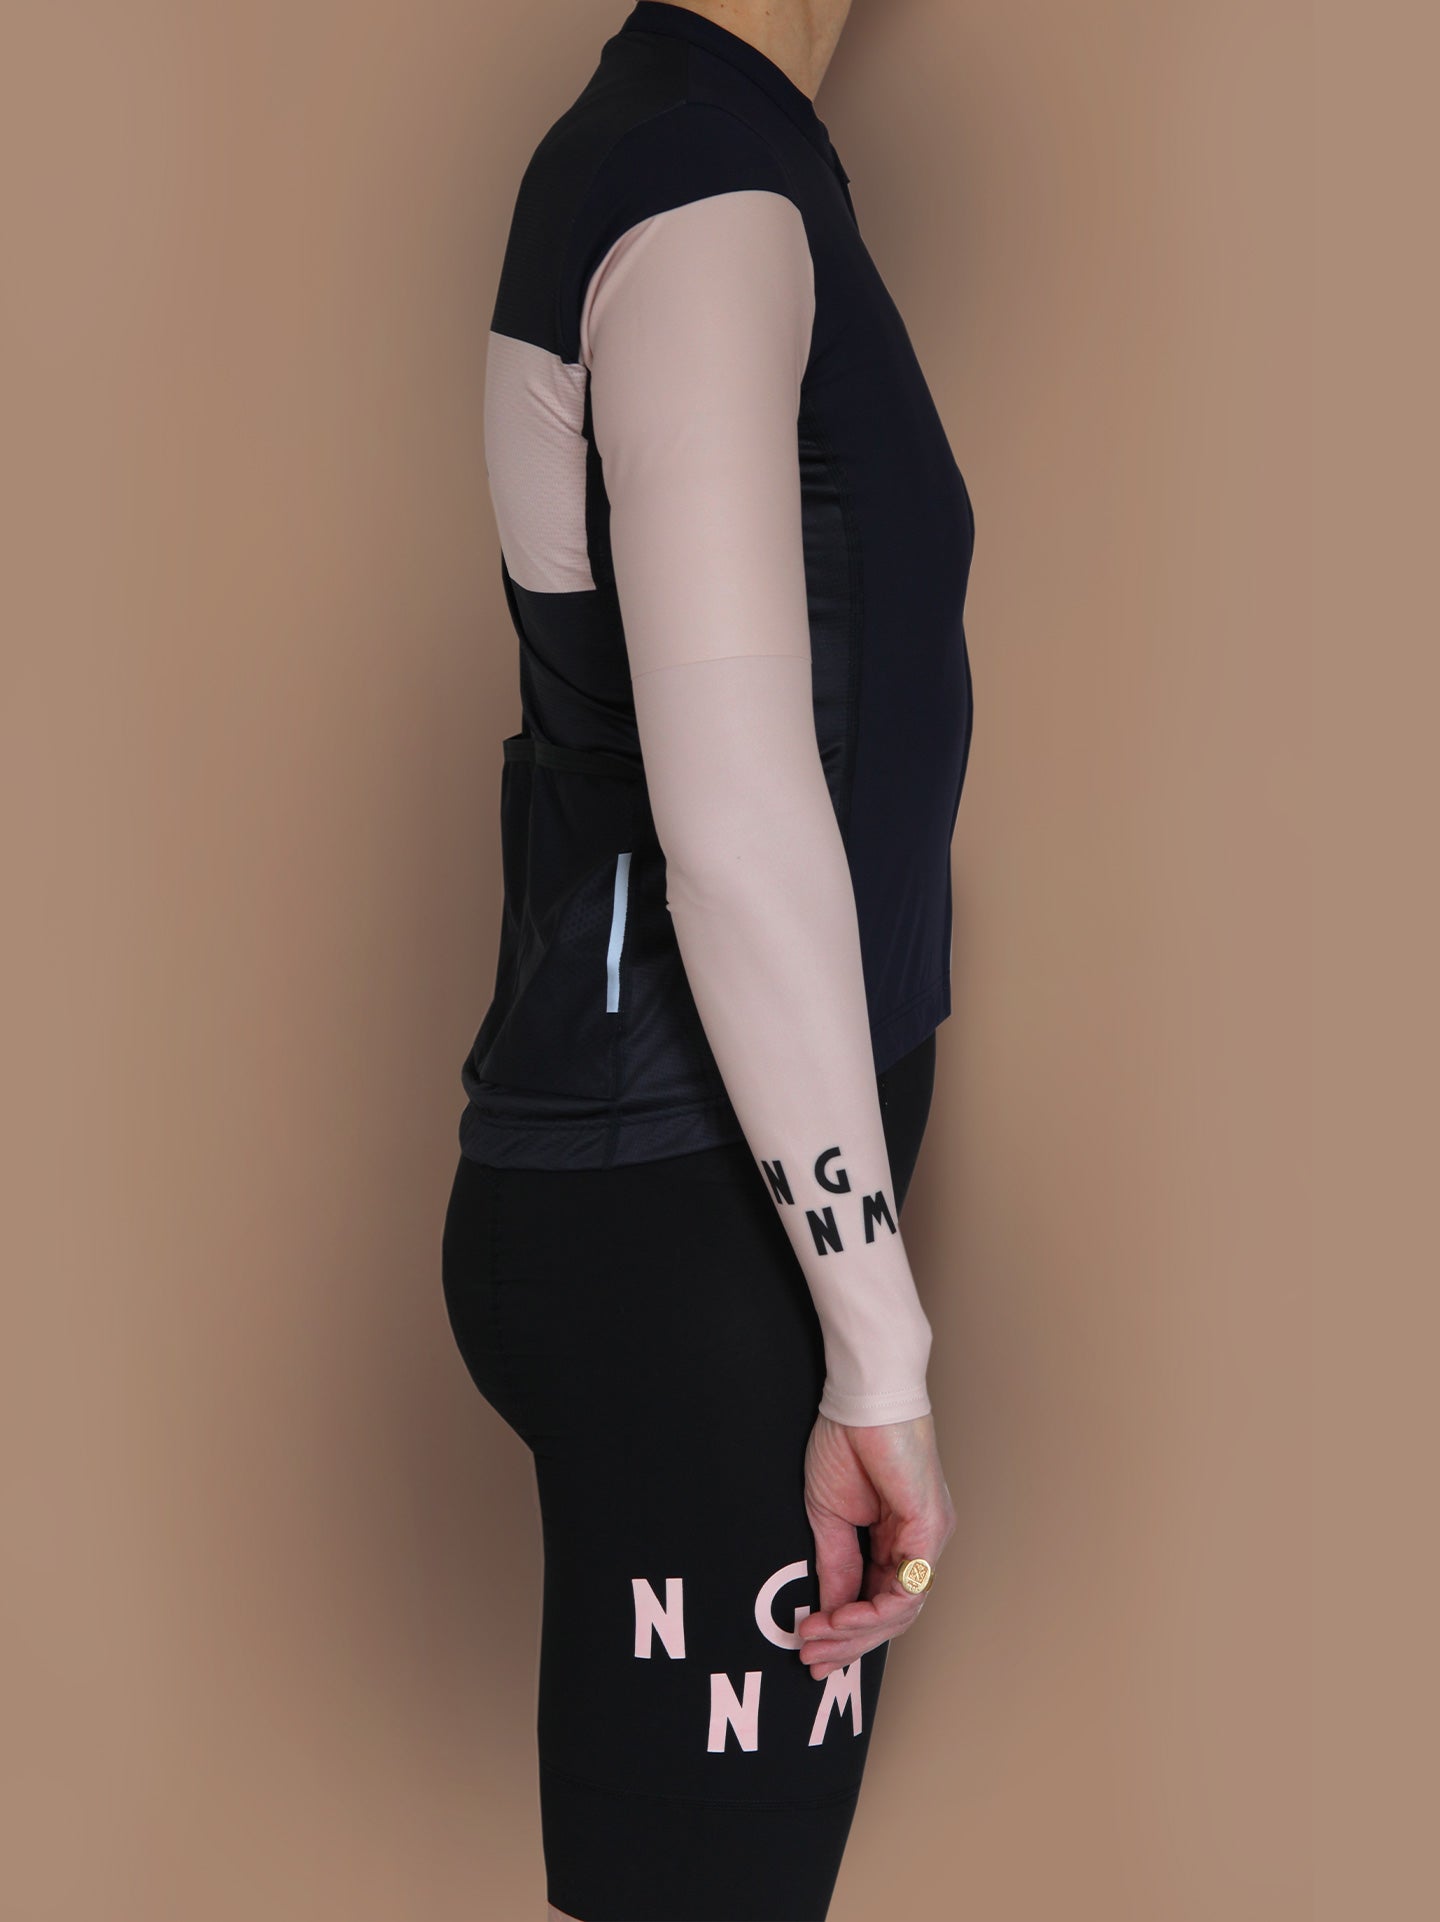 NGNM sun sleeves powder pink tattoo - detail black logo